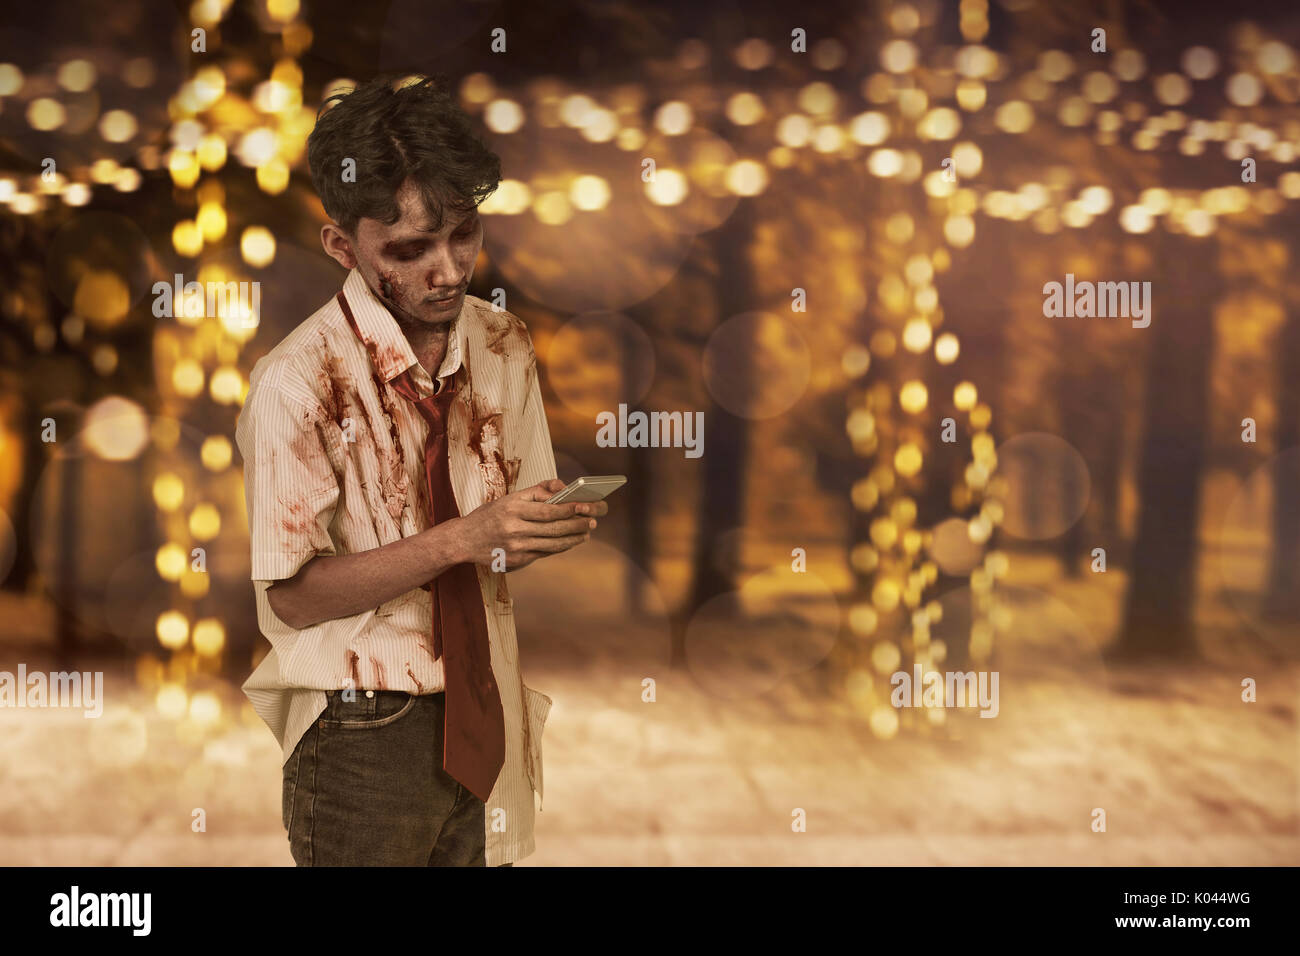 Scary asiatici uomo zombie utilizzando un mobilephone contro sfondo blured Foto Stock